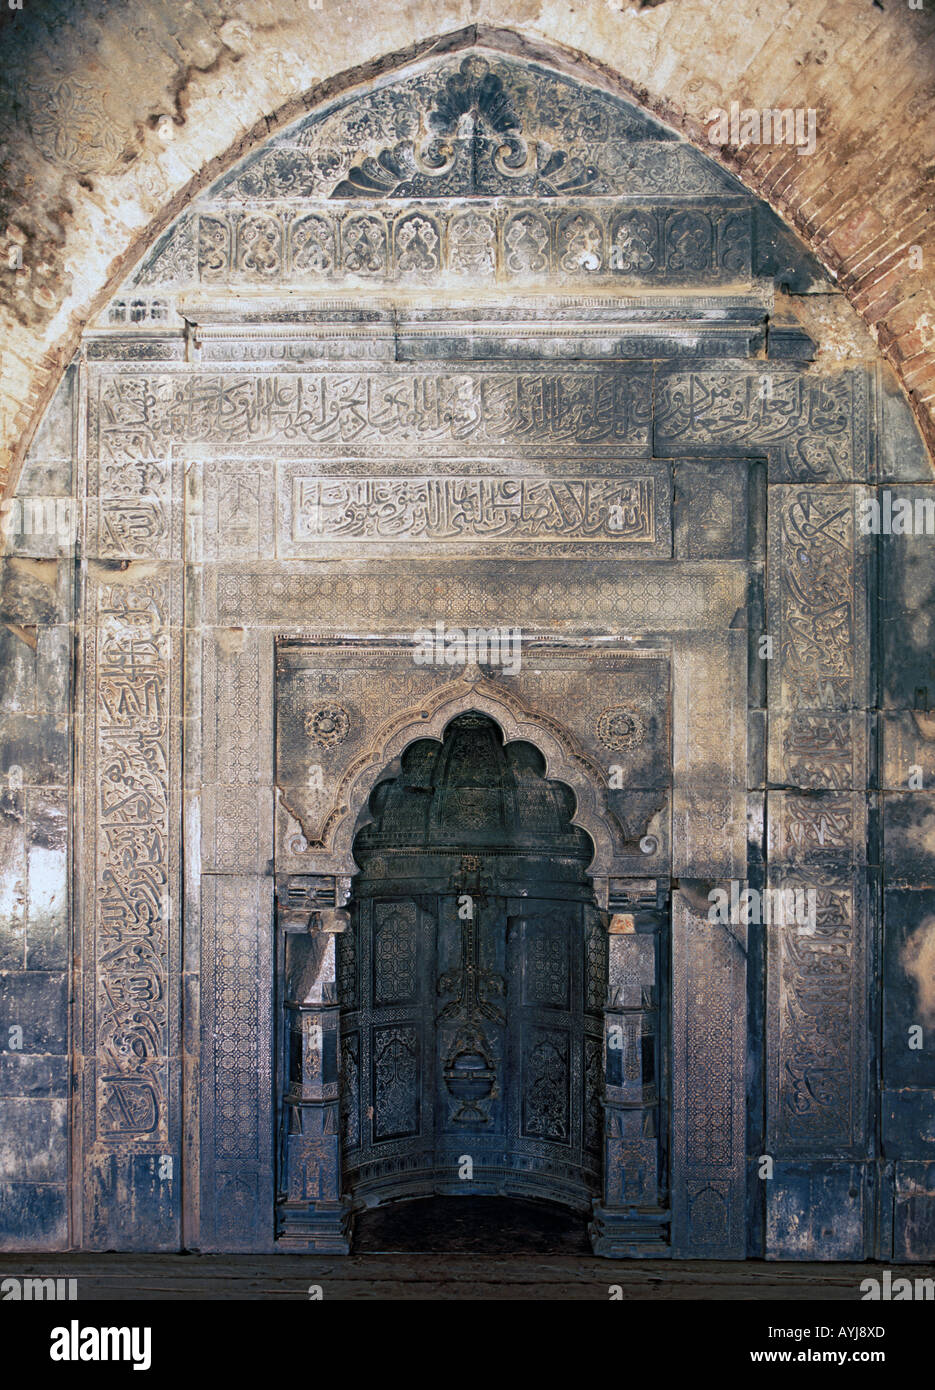 Adina mosque, Pandua, West Bengal, India Stock Photo